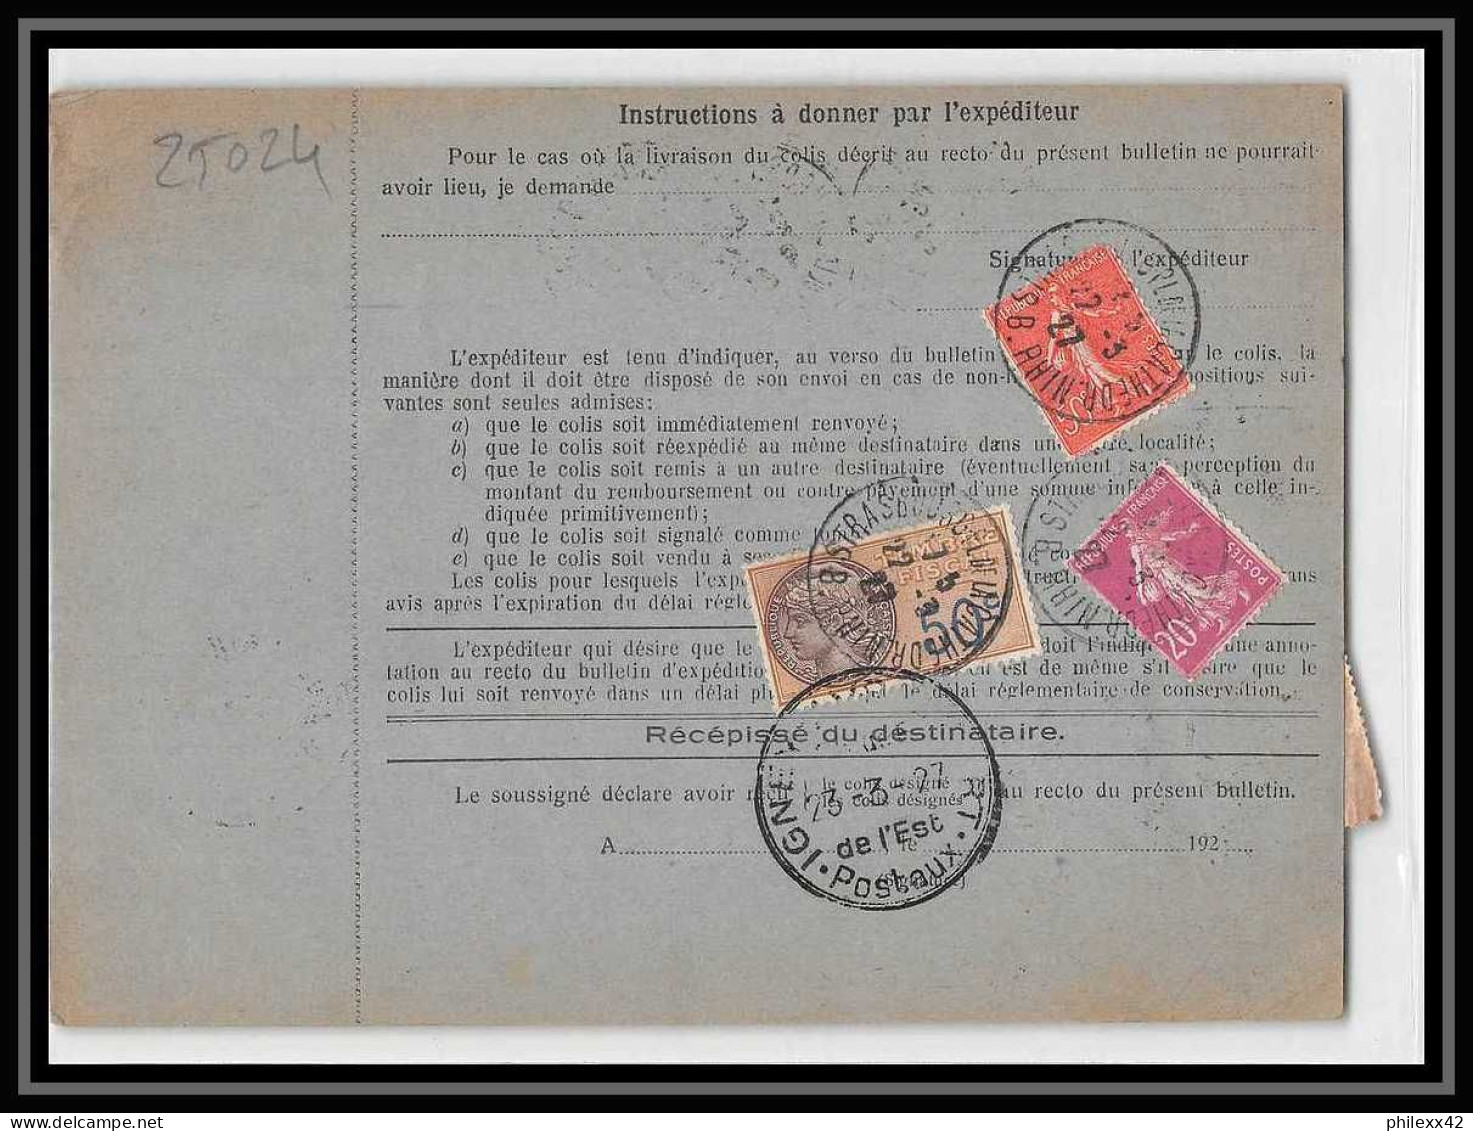 25024 Bulletin D'expédition France Colis Postaux Fiscal Haut Rhin - 1927 Strasbourg Merson 145 Alsace-Lorraine  - Covers & Documents